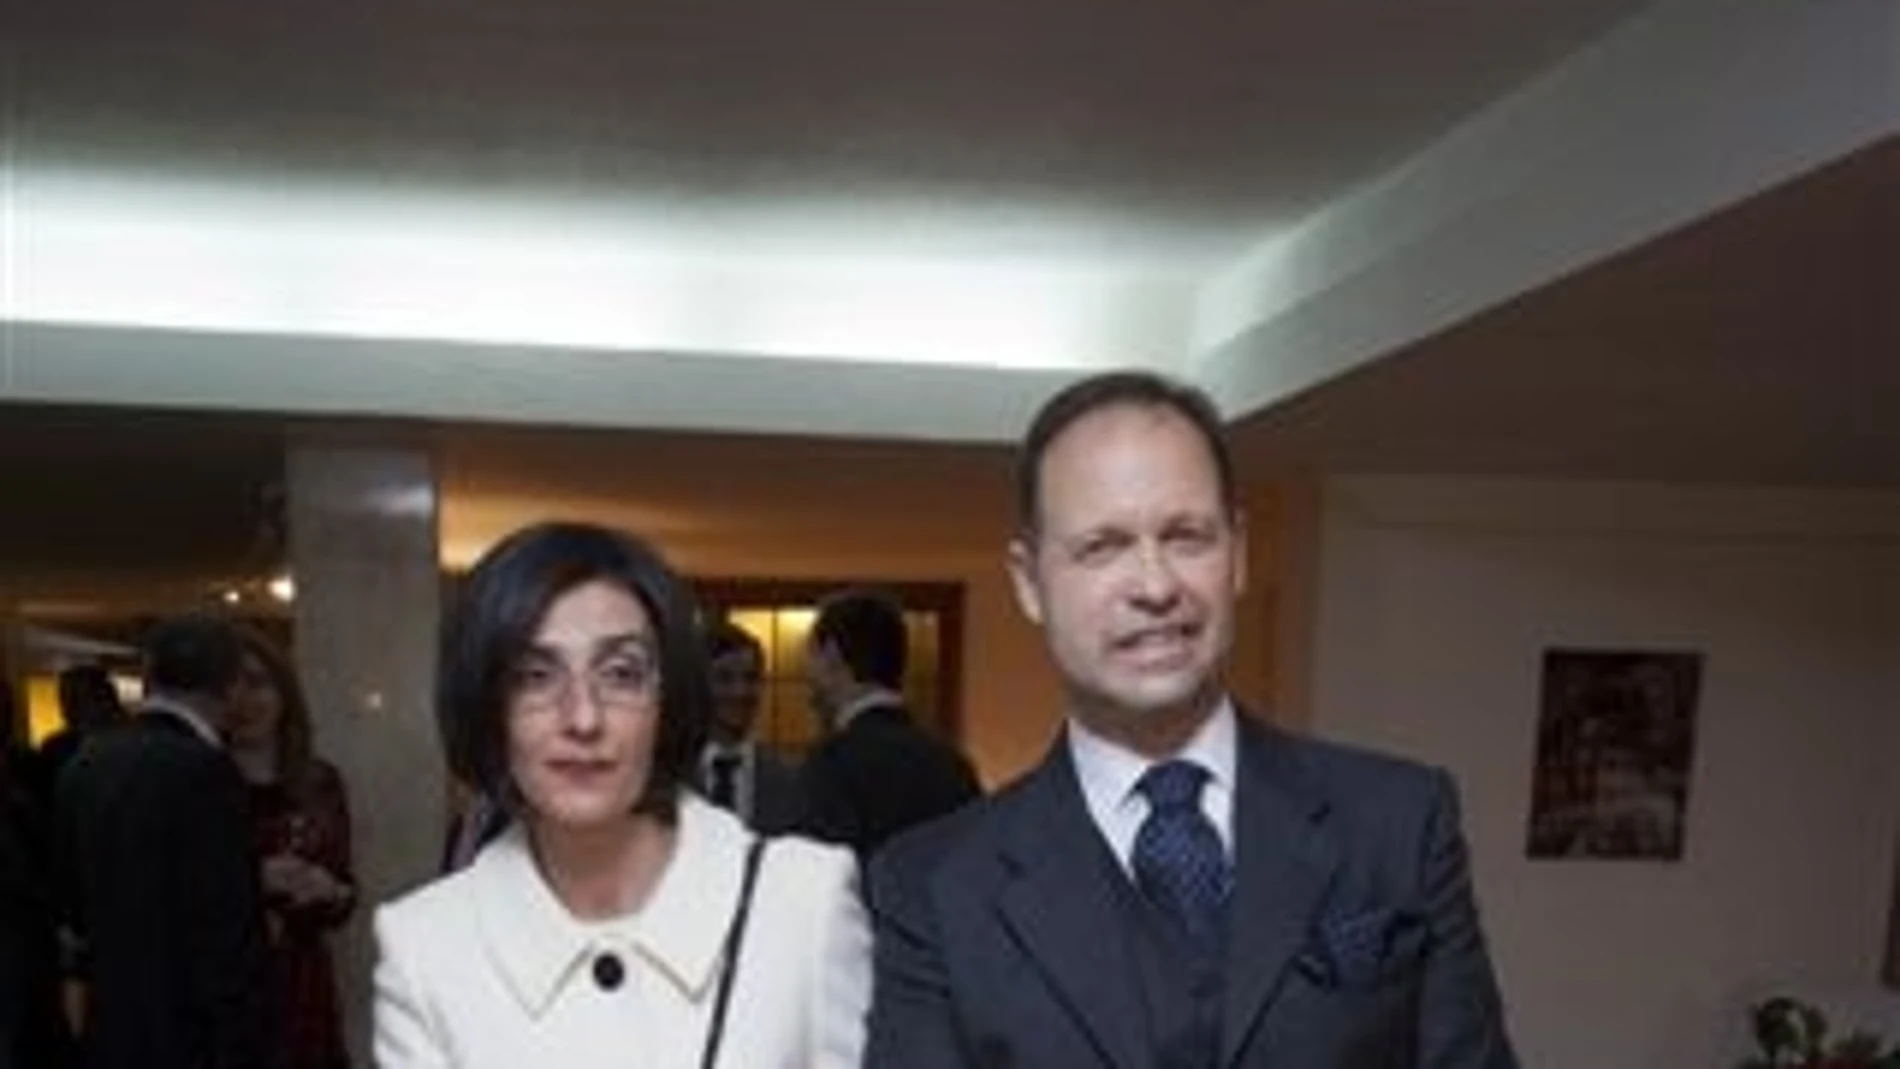 El embajador búlgaro don Kostadin Tashev Kodzhabashev y su señora Nina Marinova Kodzhabasheva, posando antes de recibir de sus invitados el saludo protocolario